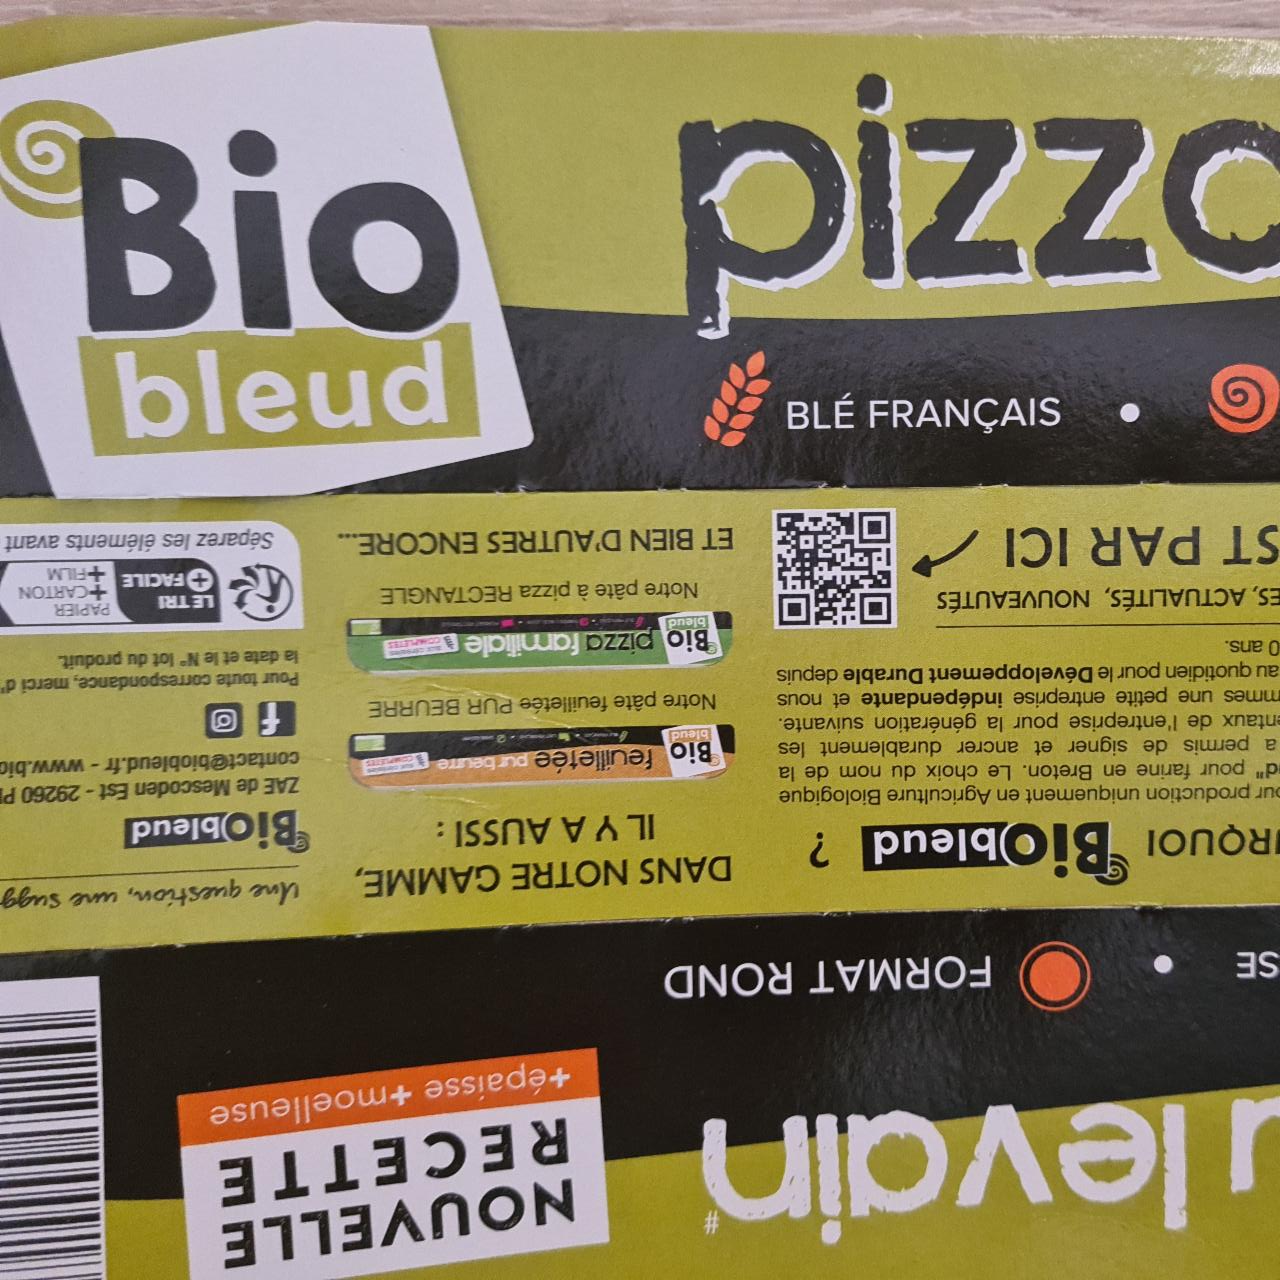 Fotografie - Pâte à Pizza au levain Biobleud